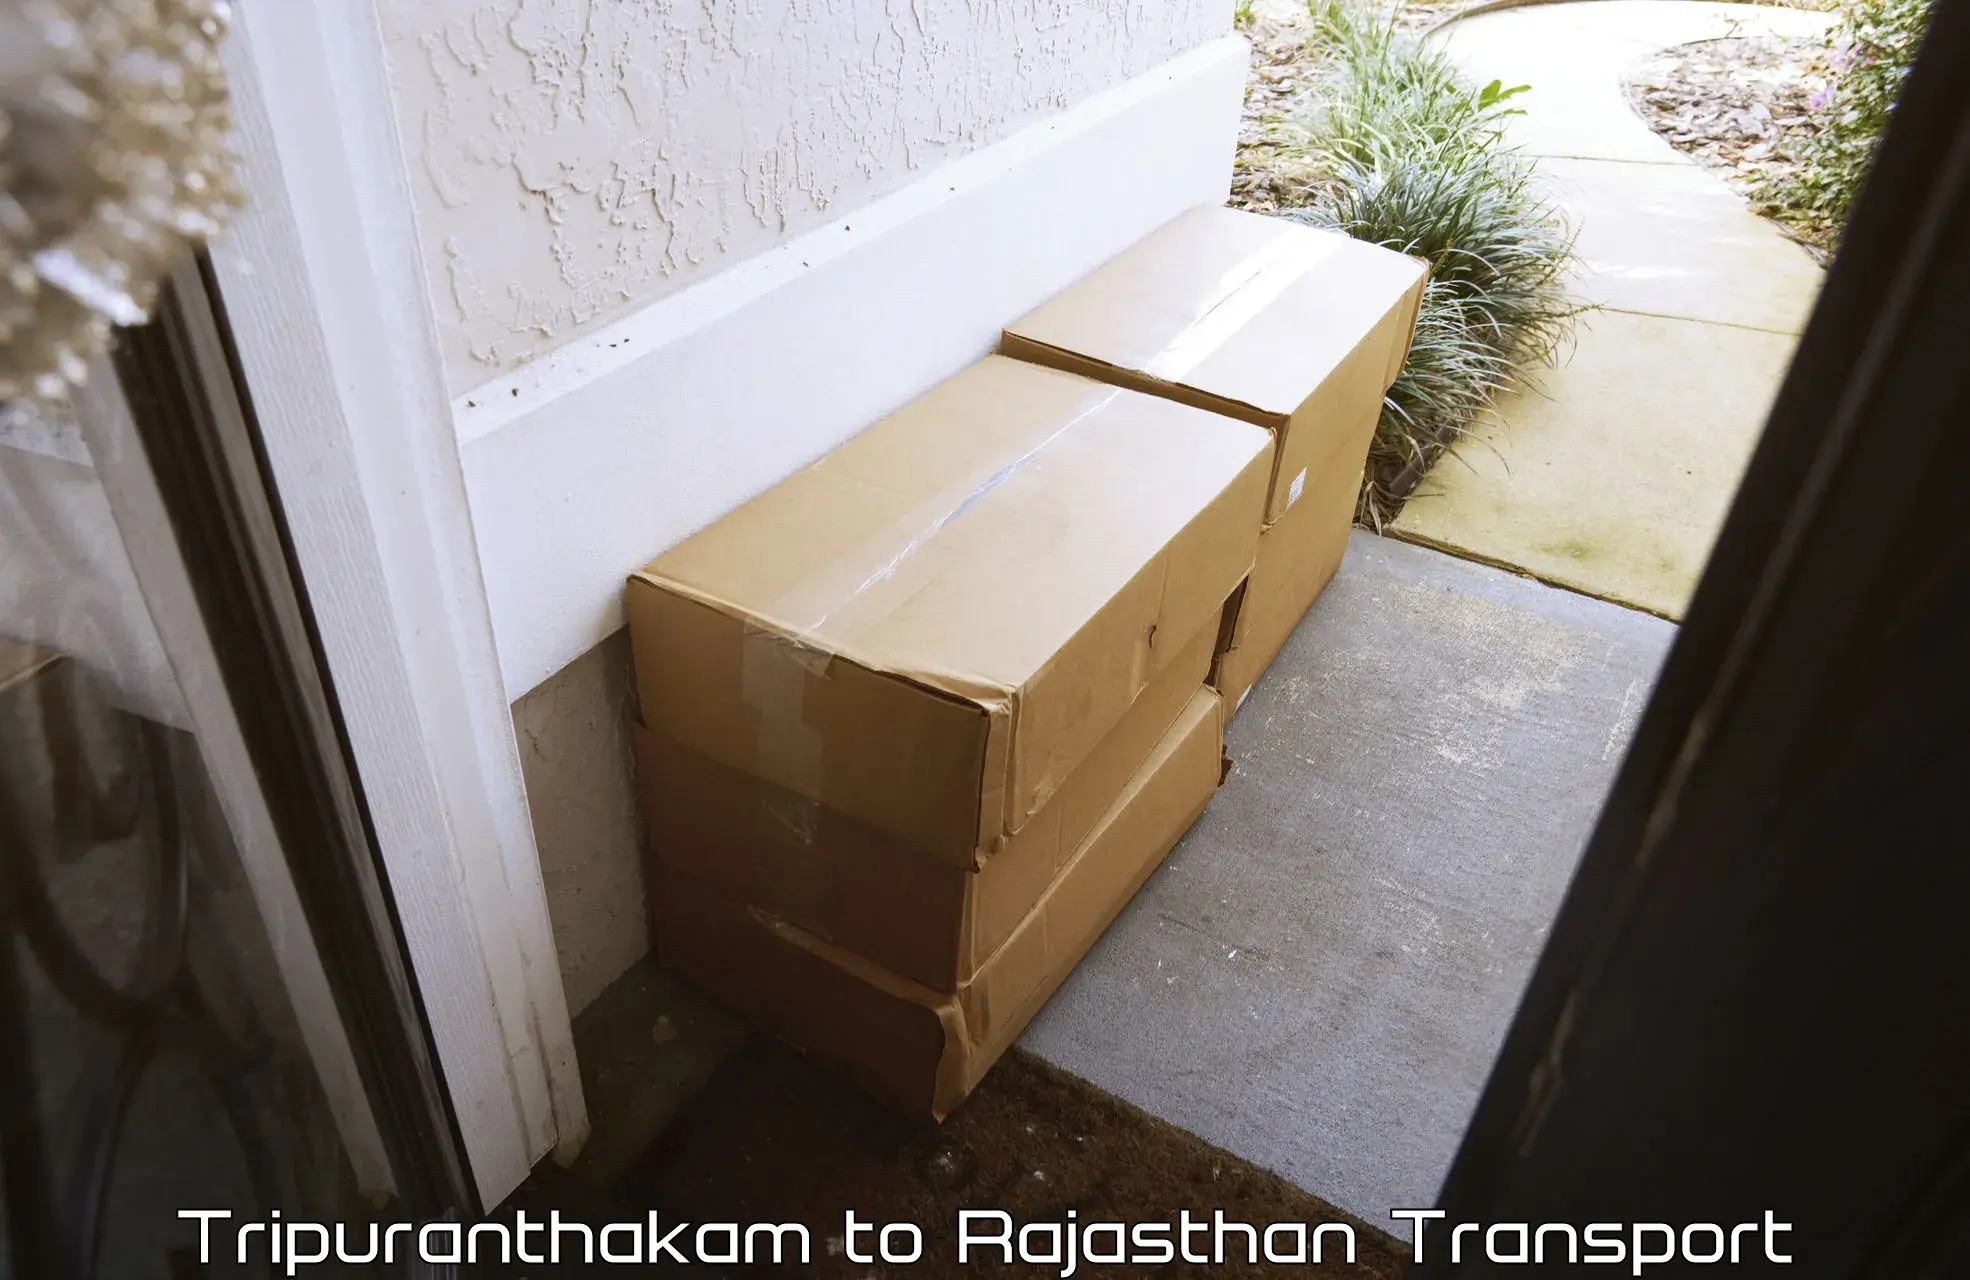 Furniture transport service Tripuranthakam to Sagwara